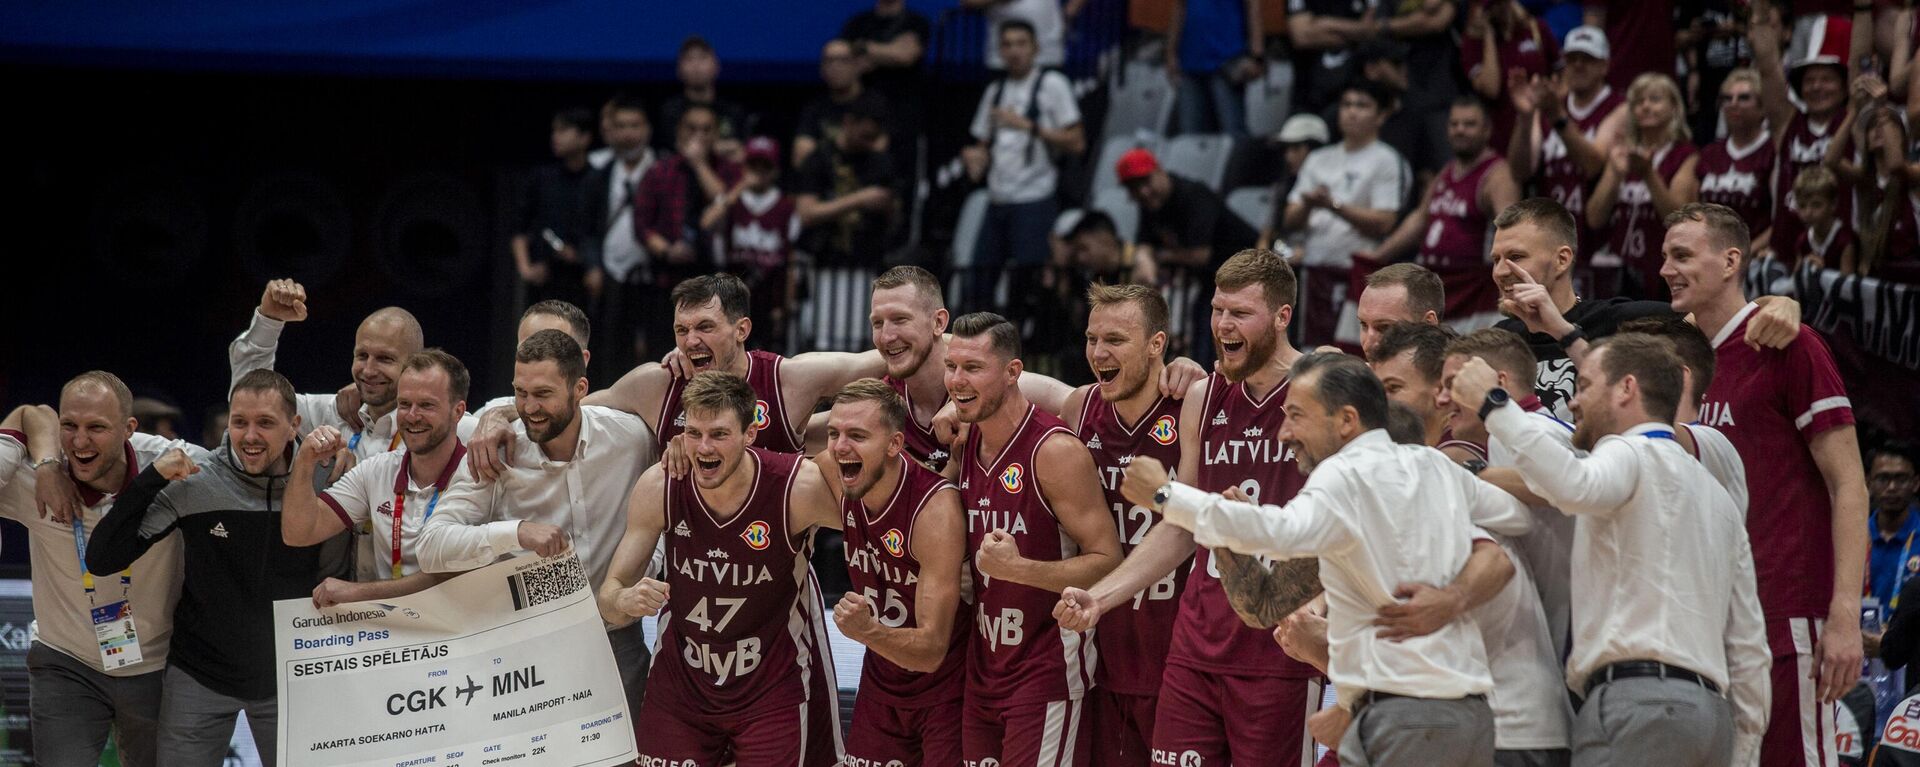 Баскетболисты сборной Латвии празднует выход в четвертьфинал ЧМ-2023 после победы над командой Бразилии - Sputnik Латвия, 1920, 04.09.2023